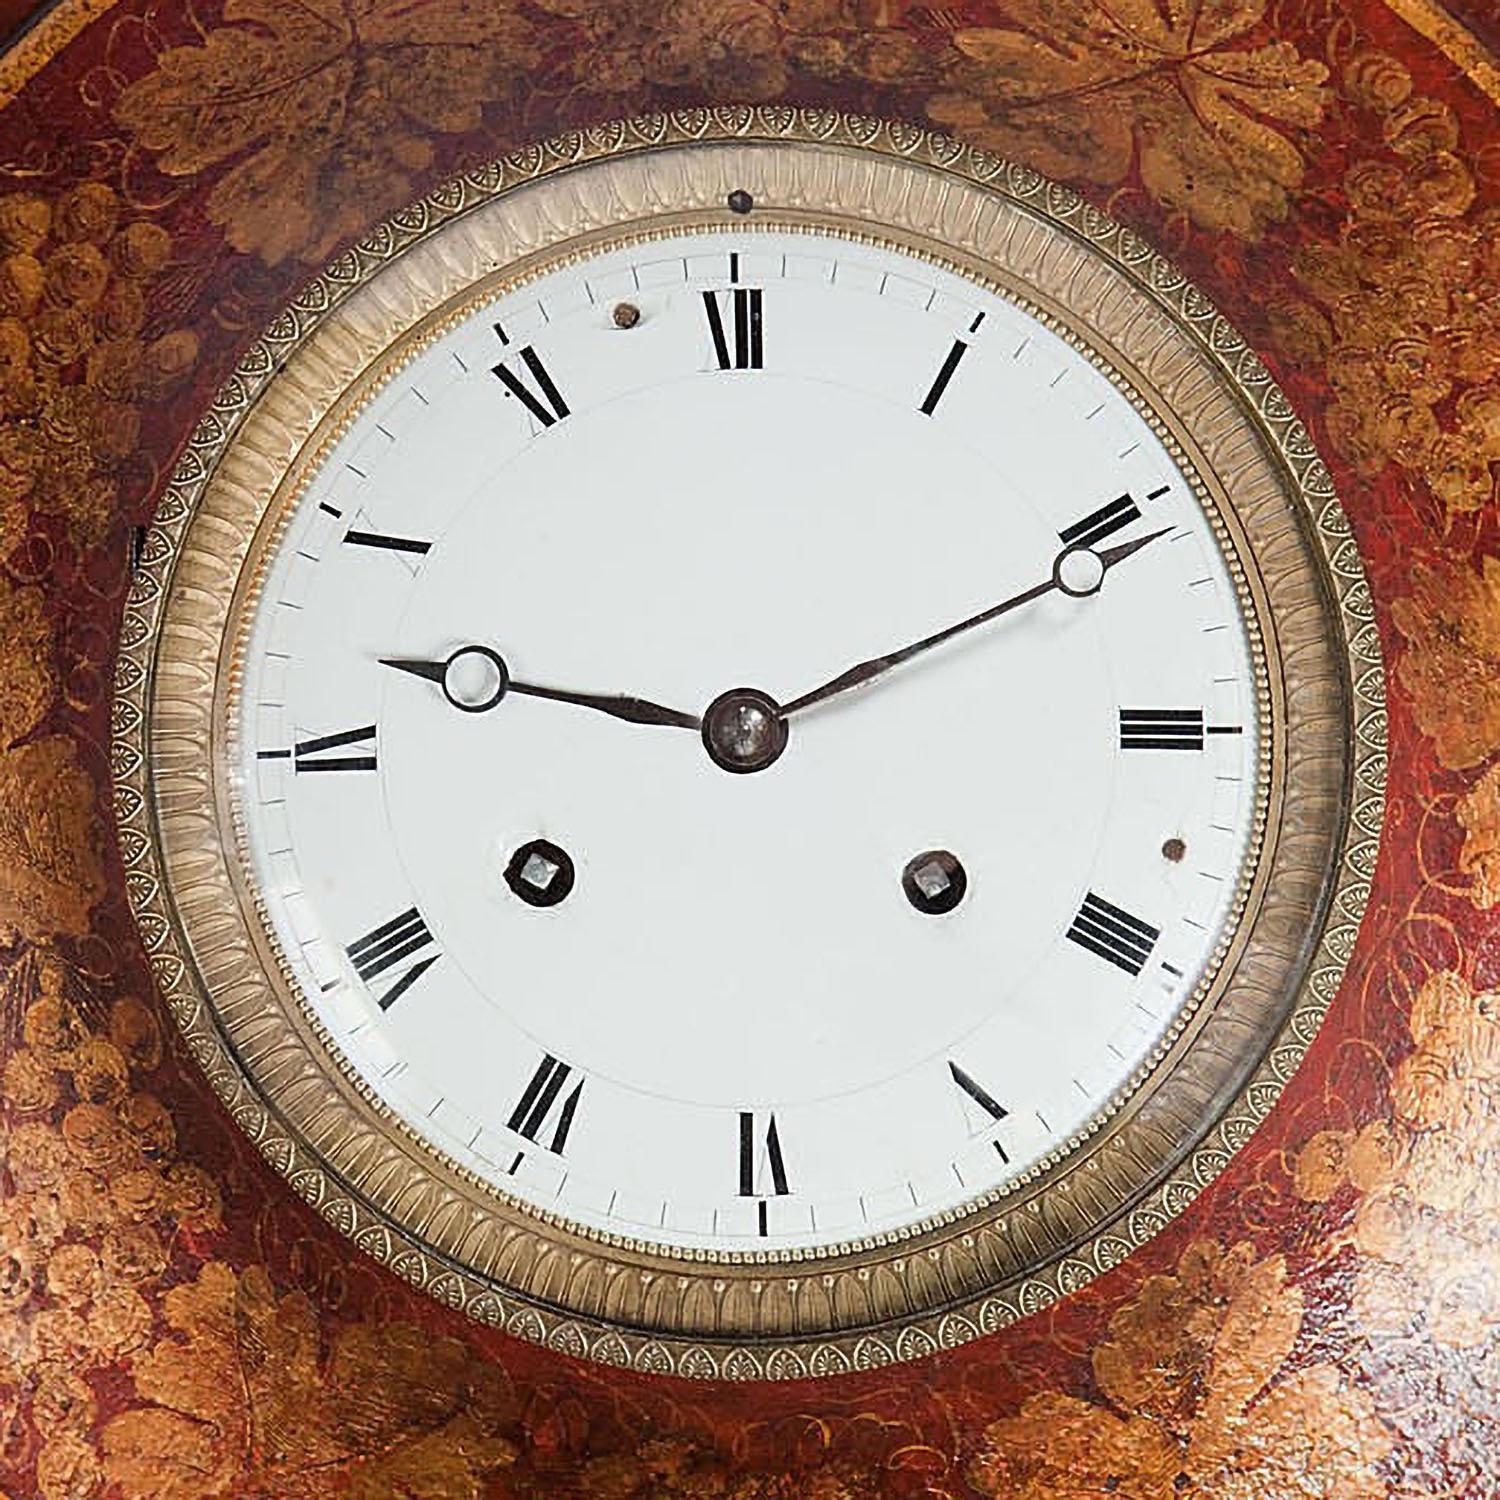 Eine sehr schöne Tole-Wanduhr aus dem frühen 19. Jahrhundert, die runde Bullaugenform mit einem zentralen weiß emaillierten Zifferblatt in einer vergoldeten Bronzefassung. Das Gehäuse der Uhr ist mit rotem Japanning und vergoldeten Details versehen.